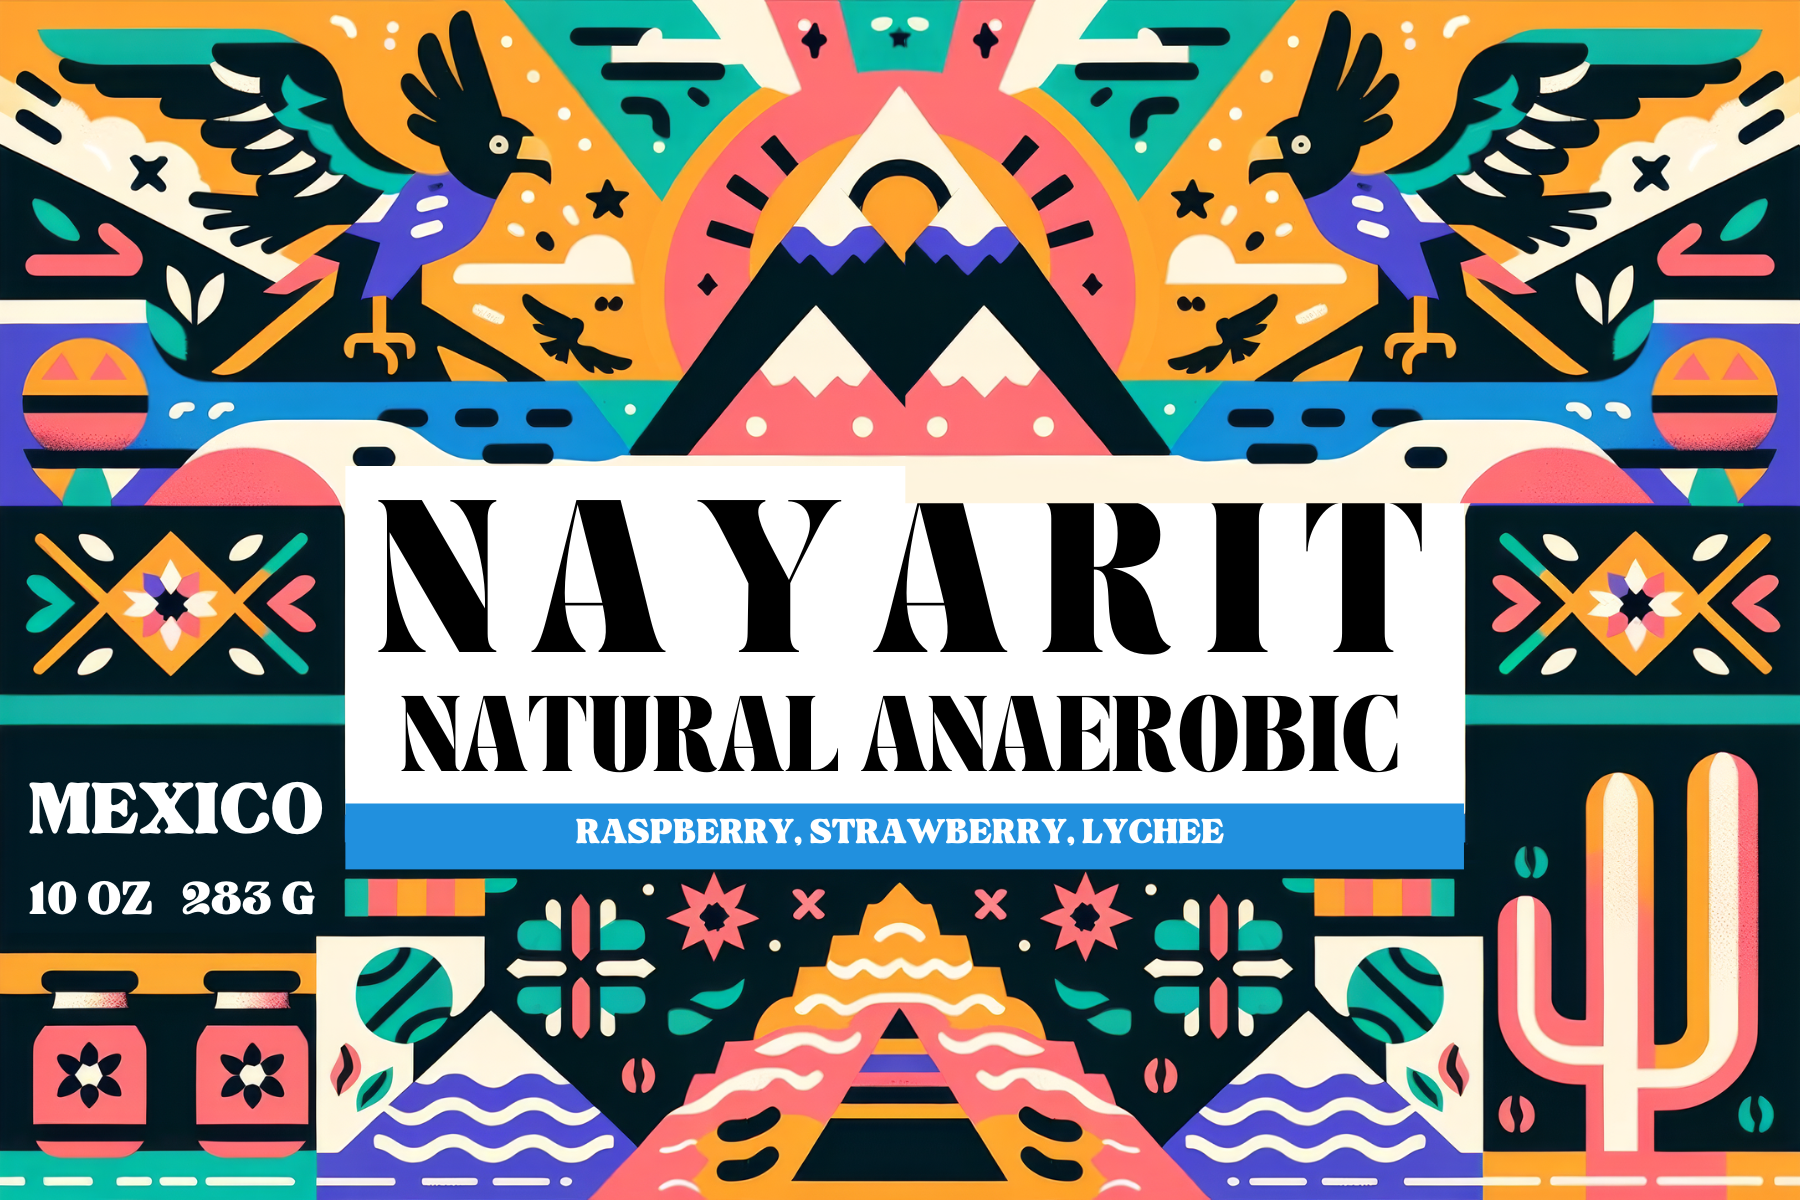 Mexico Natural Anaerobic - Nayarit